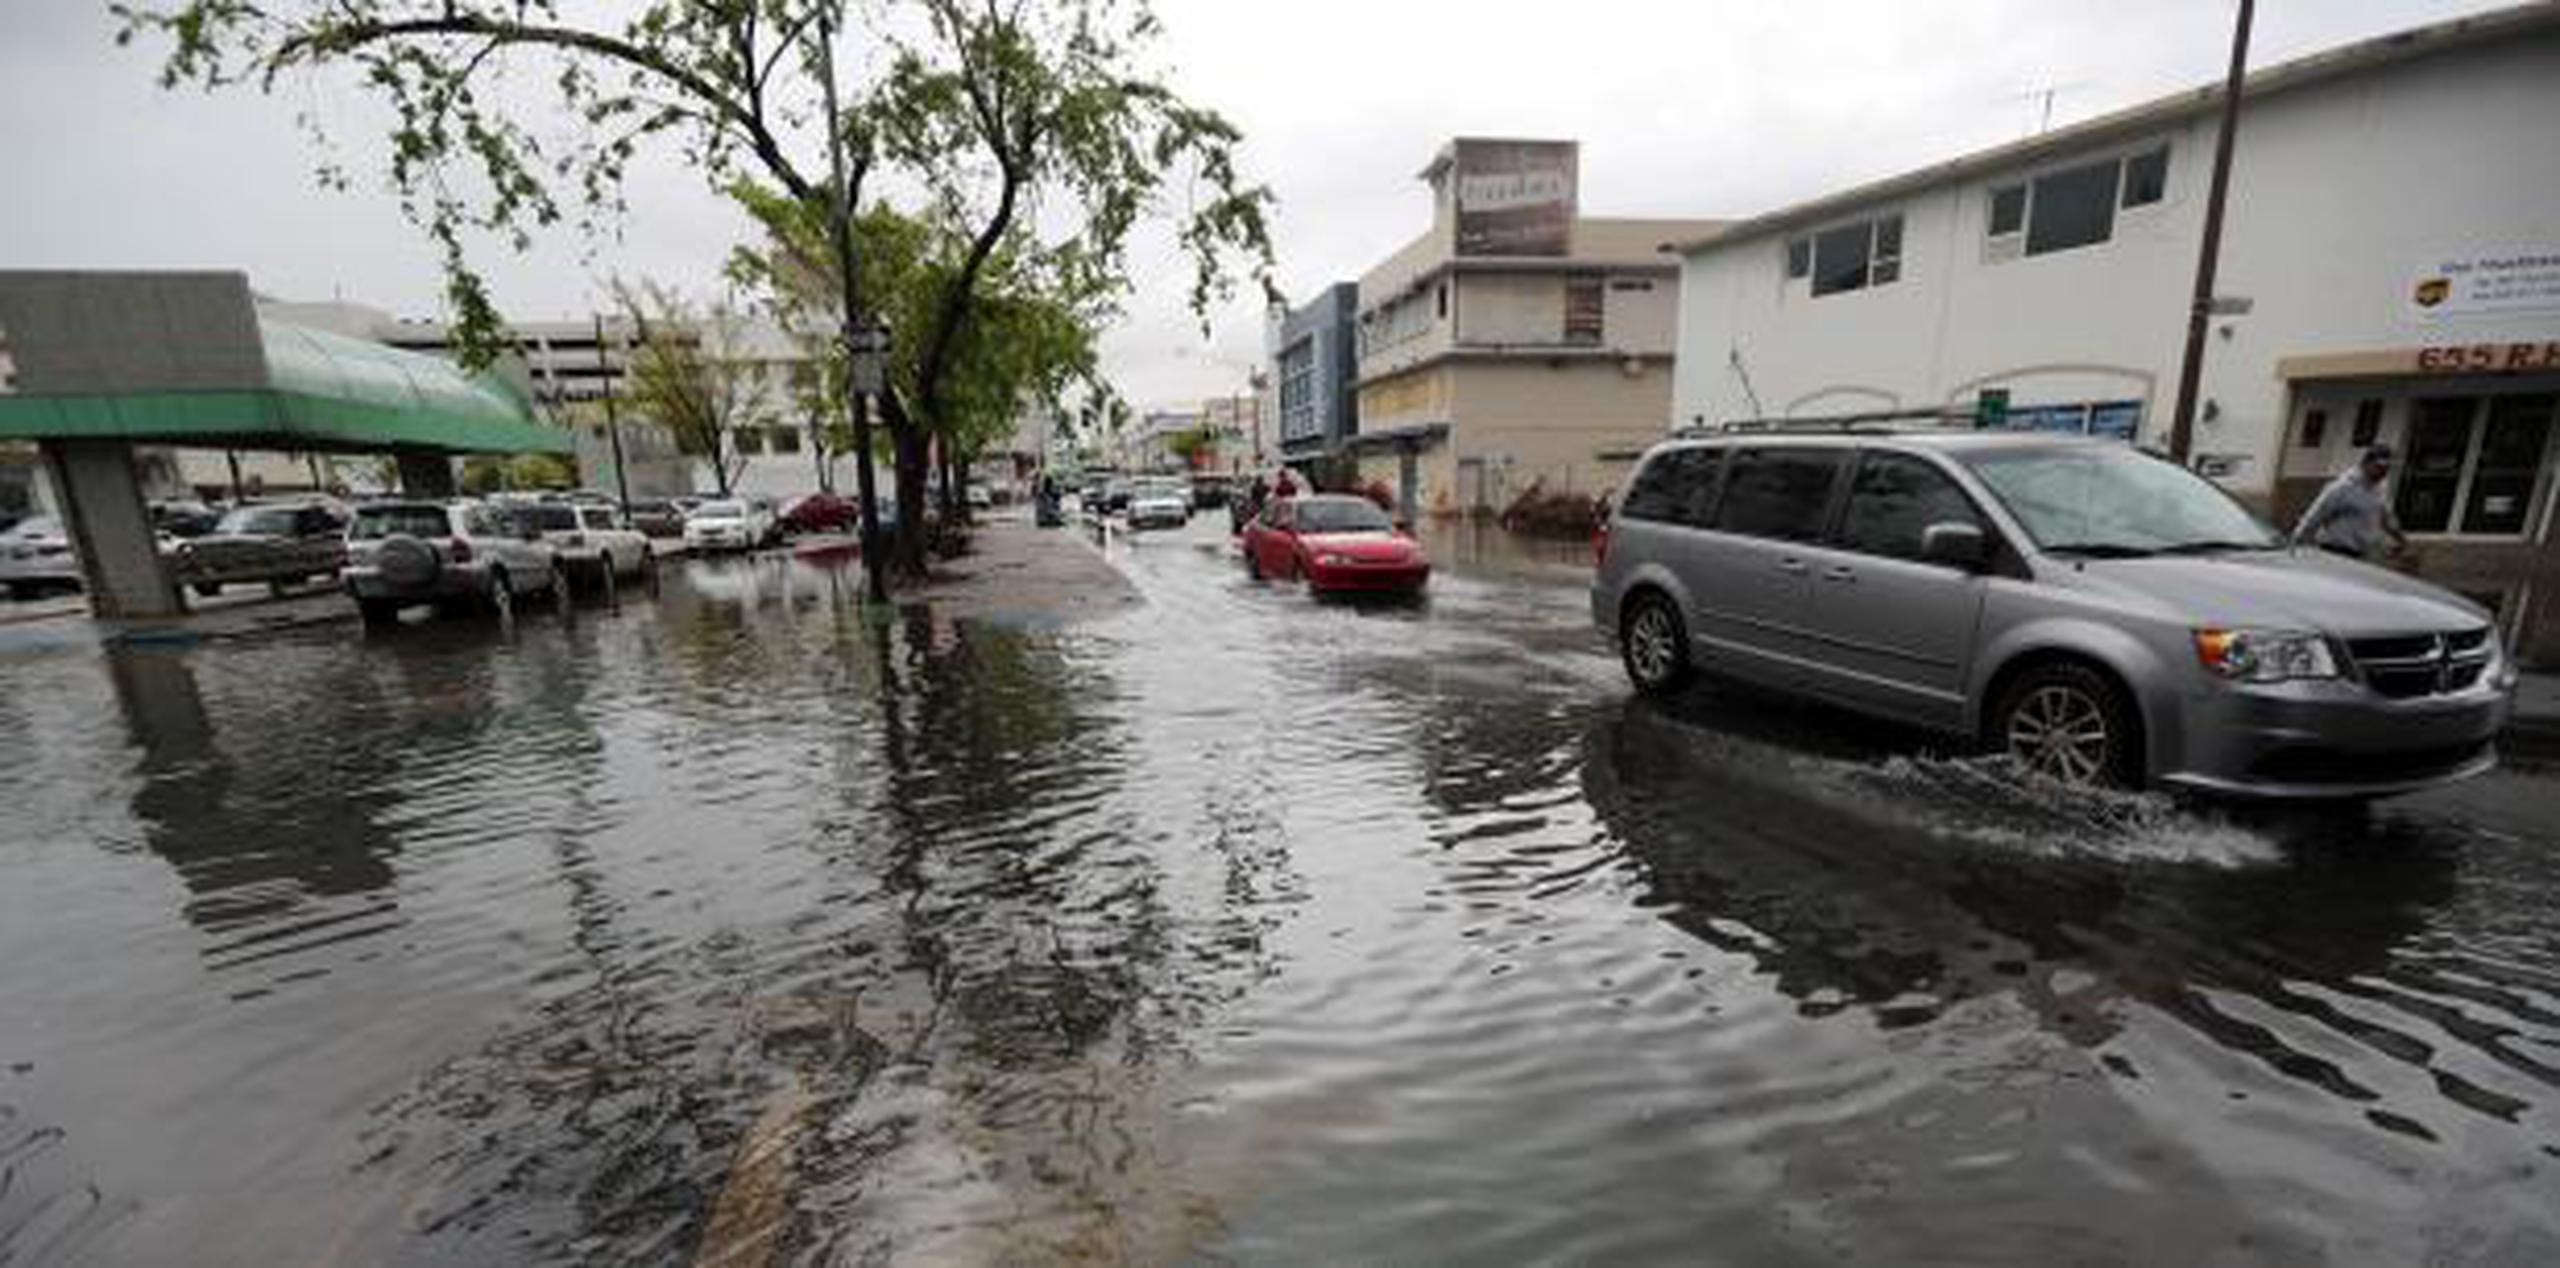 Algunas zonas son propensas a inundaciones, por lo que la agencia solicitó a las familias revisar los planes de emergencia. (Archivo)